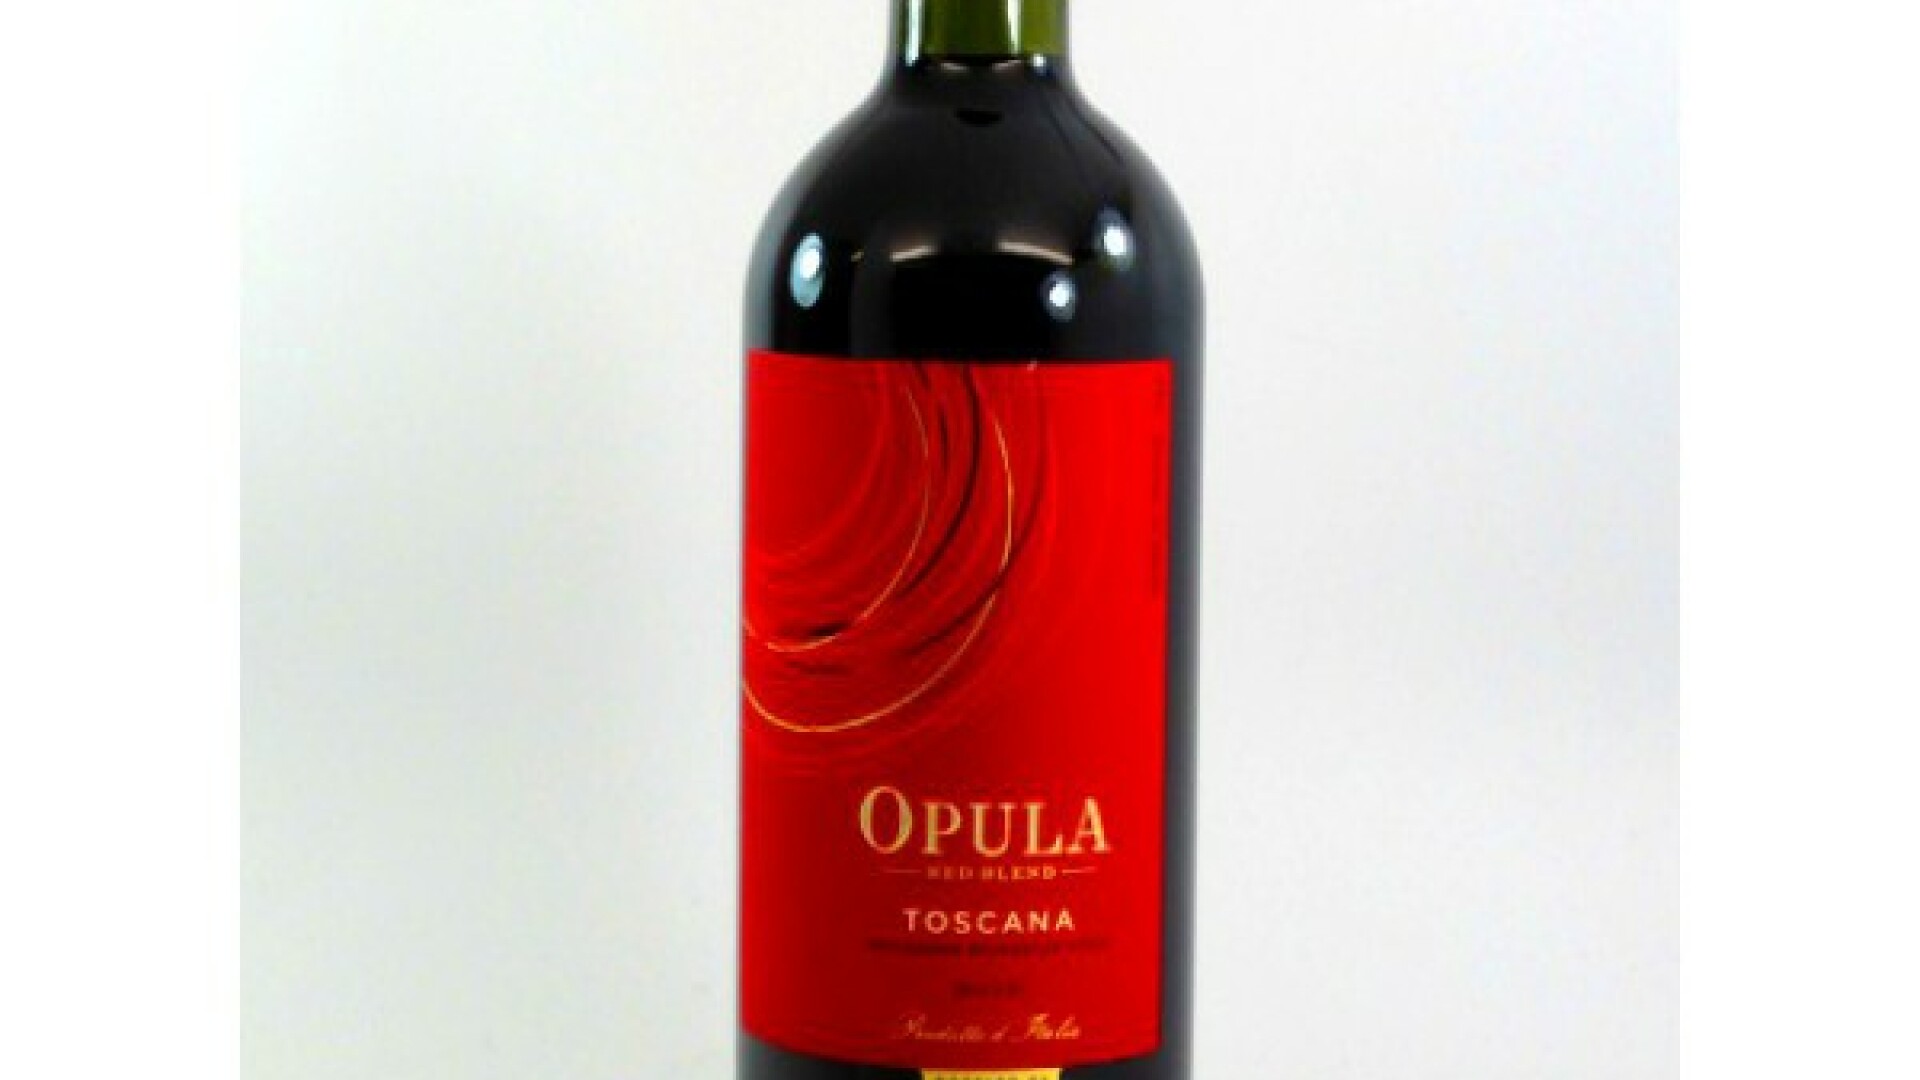 vinul opula